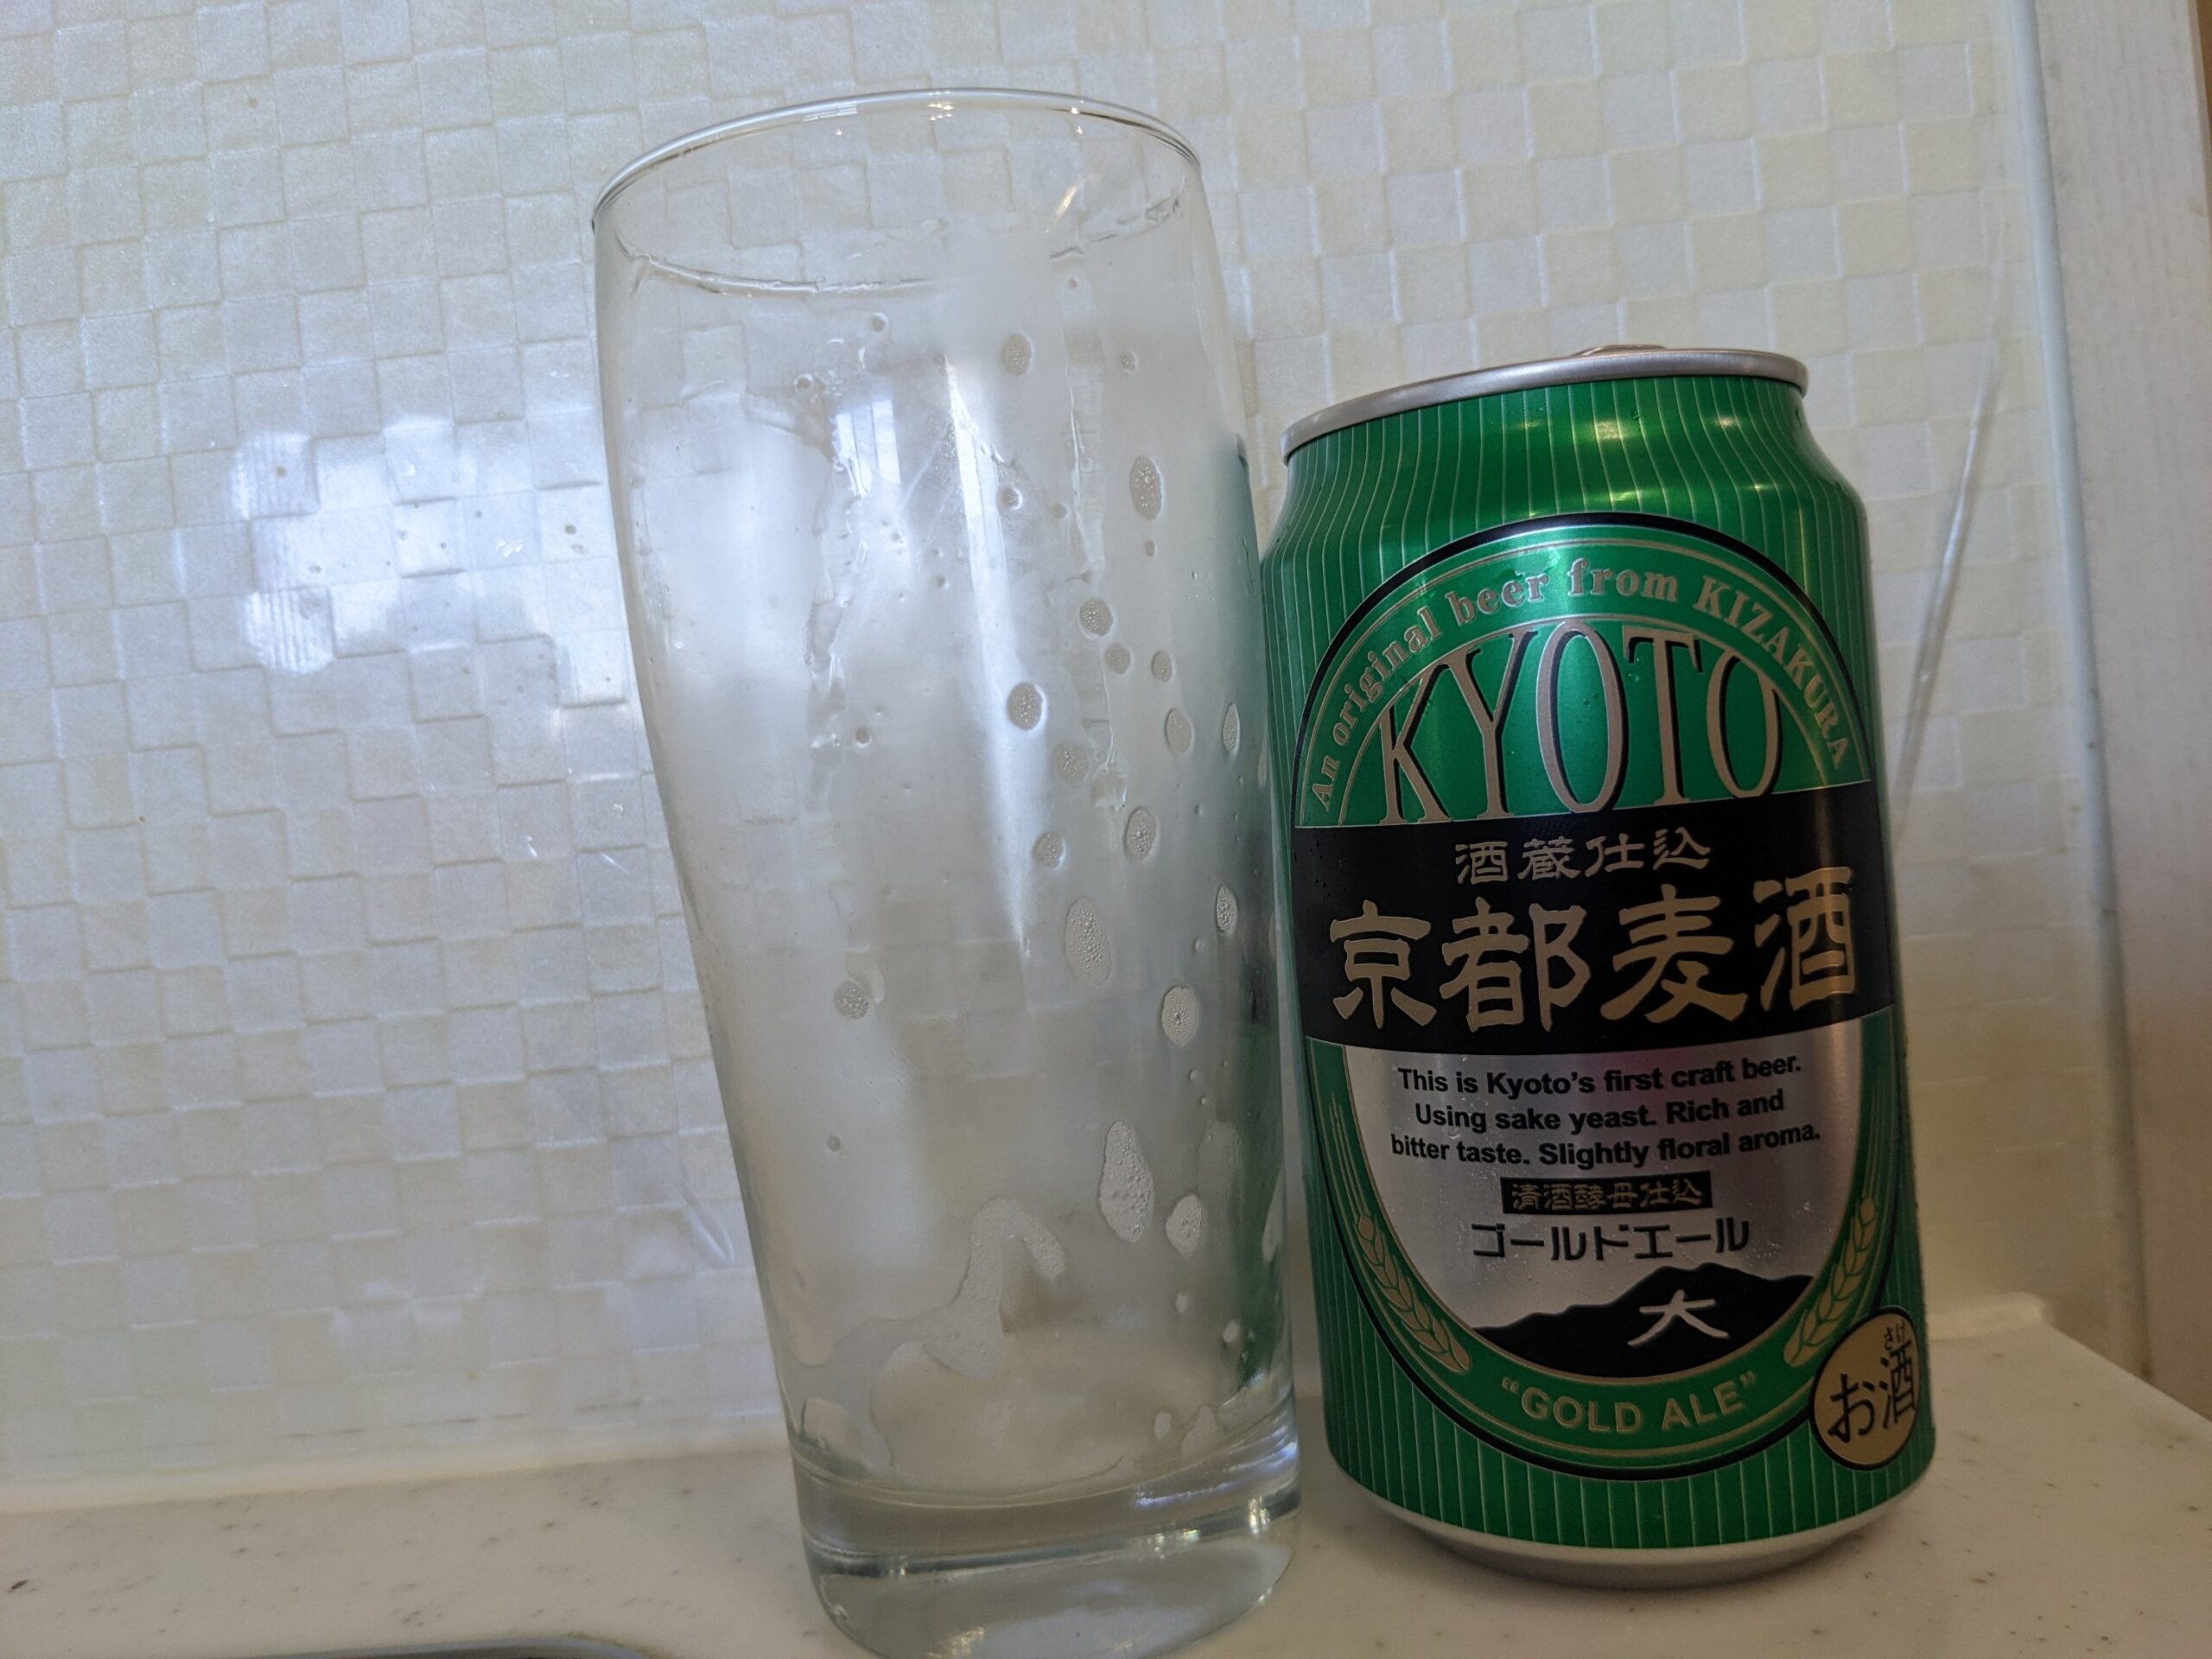 「京都麦酒ゴールドエール 」を飲み終えたグラスとその空き缶